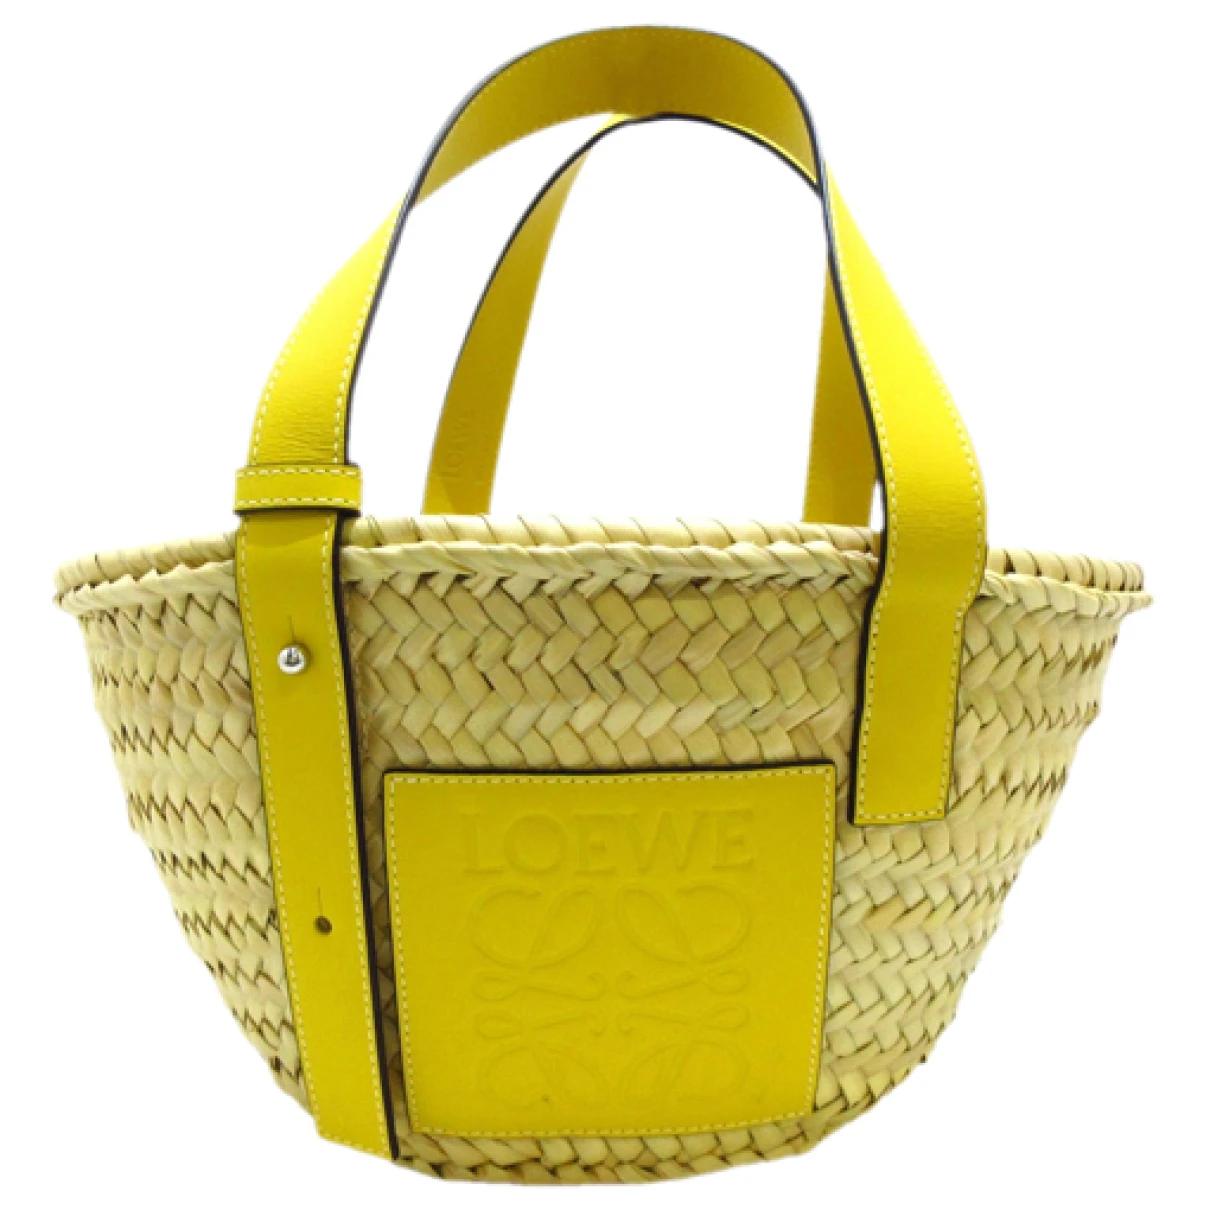 Pre-owned Loewe Basket Bag Tote In Yellow